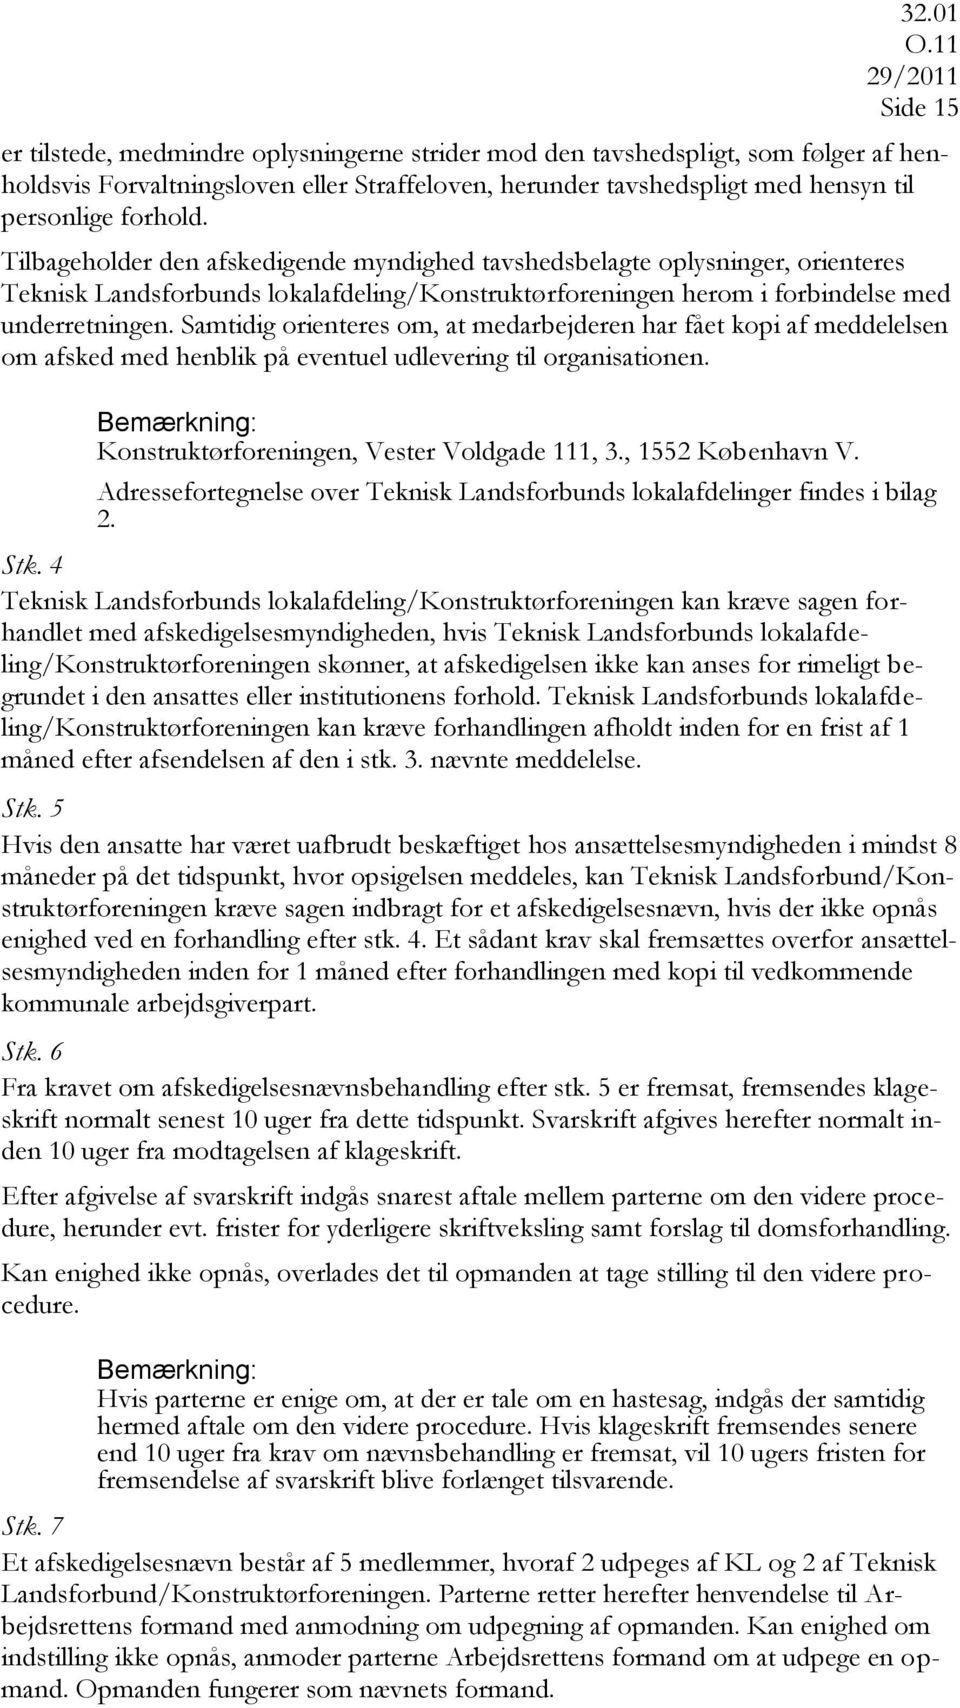 Samtidig orienteres om, at medarbejderen har fået kopi af meddelelsen om afsked med henblik på eventuel udlevering til organisationen. Konstruktørforeningen, Vester Voldgade 111, 3., 1552 København V.